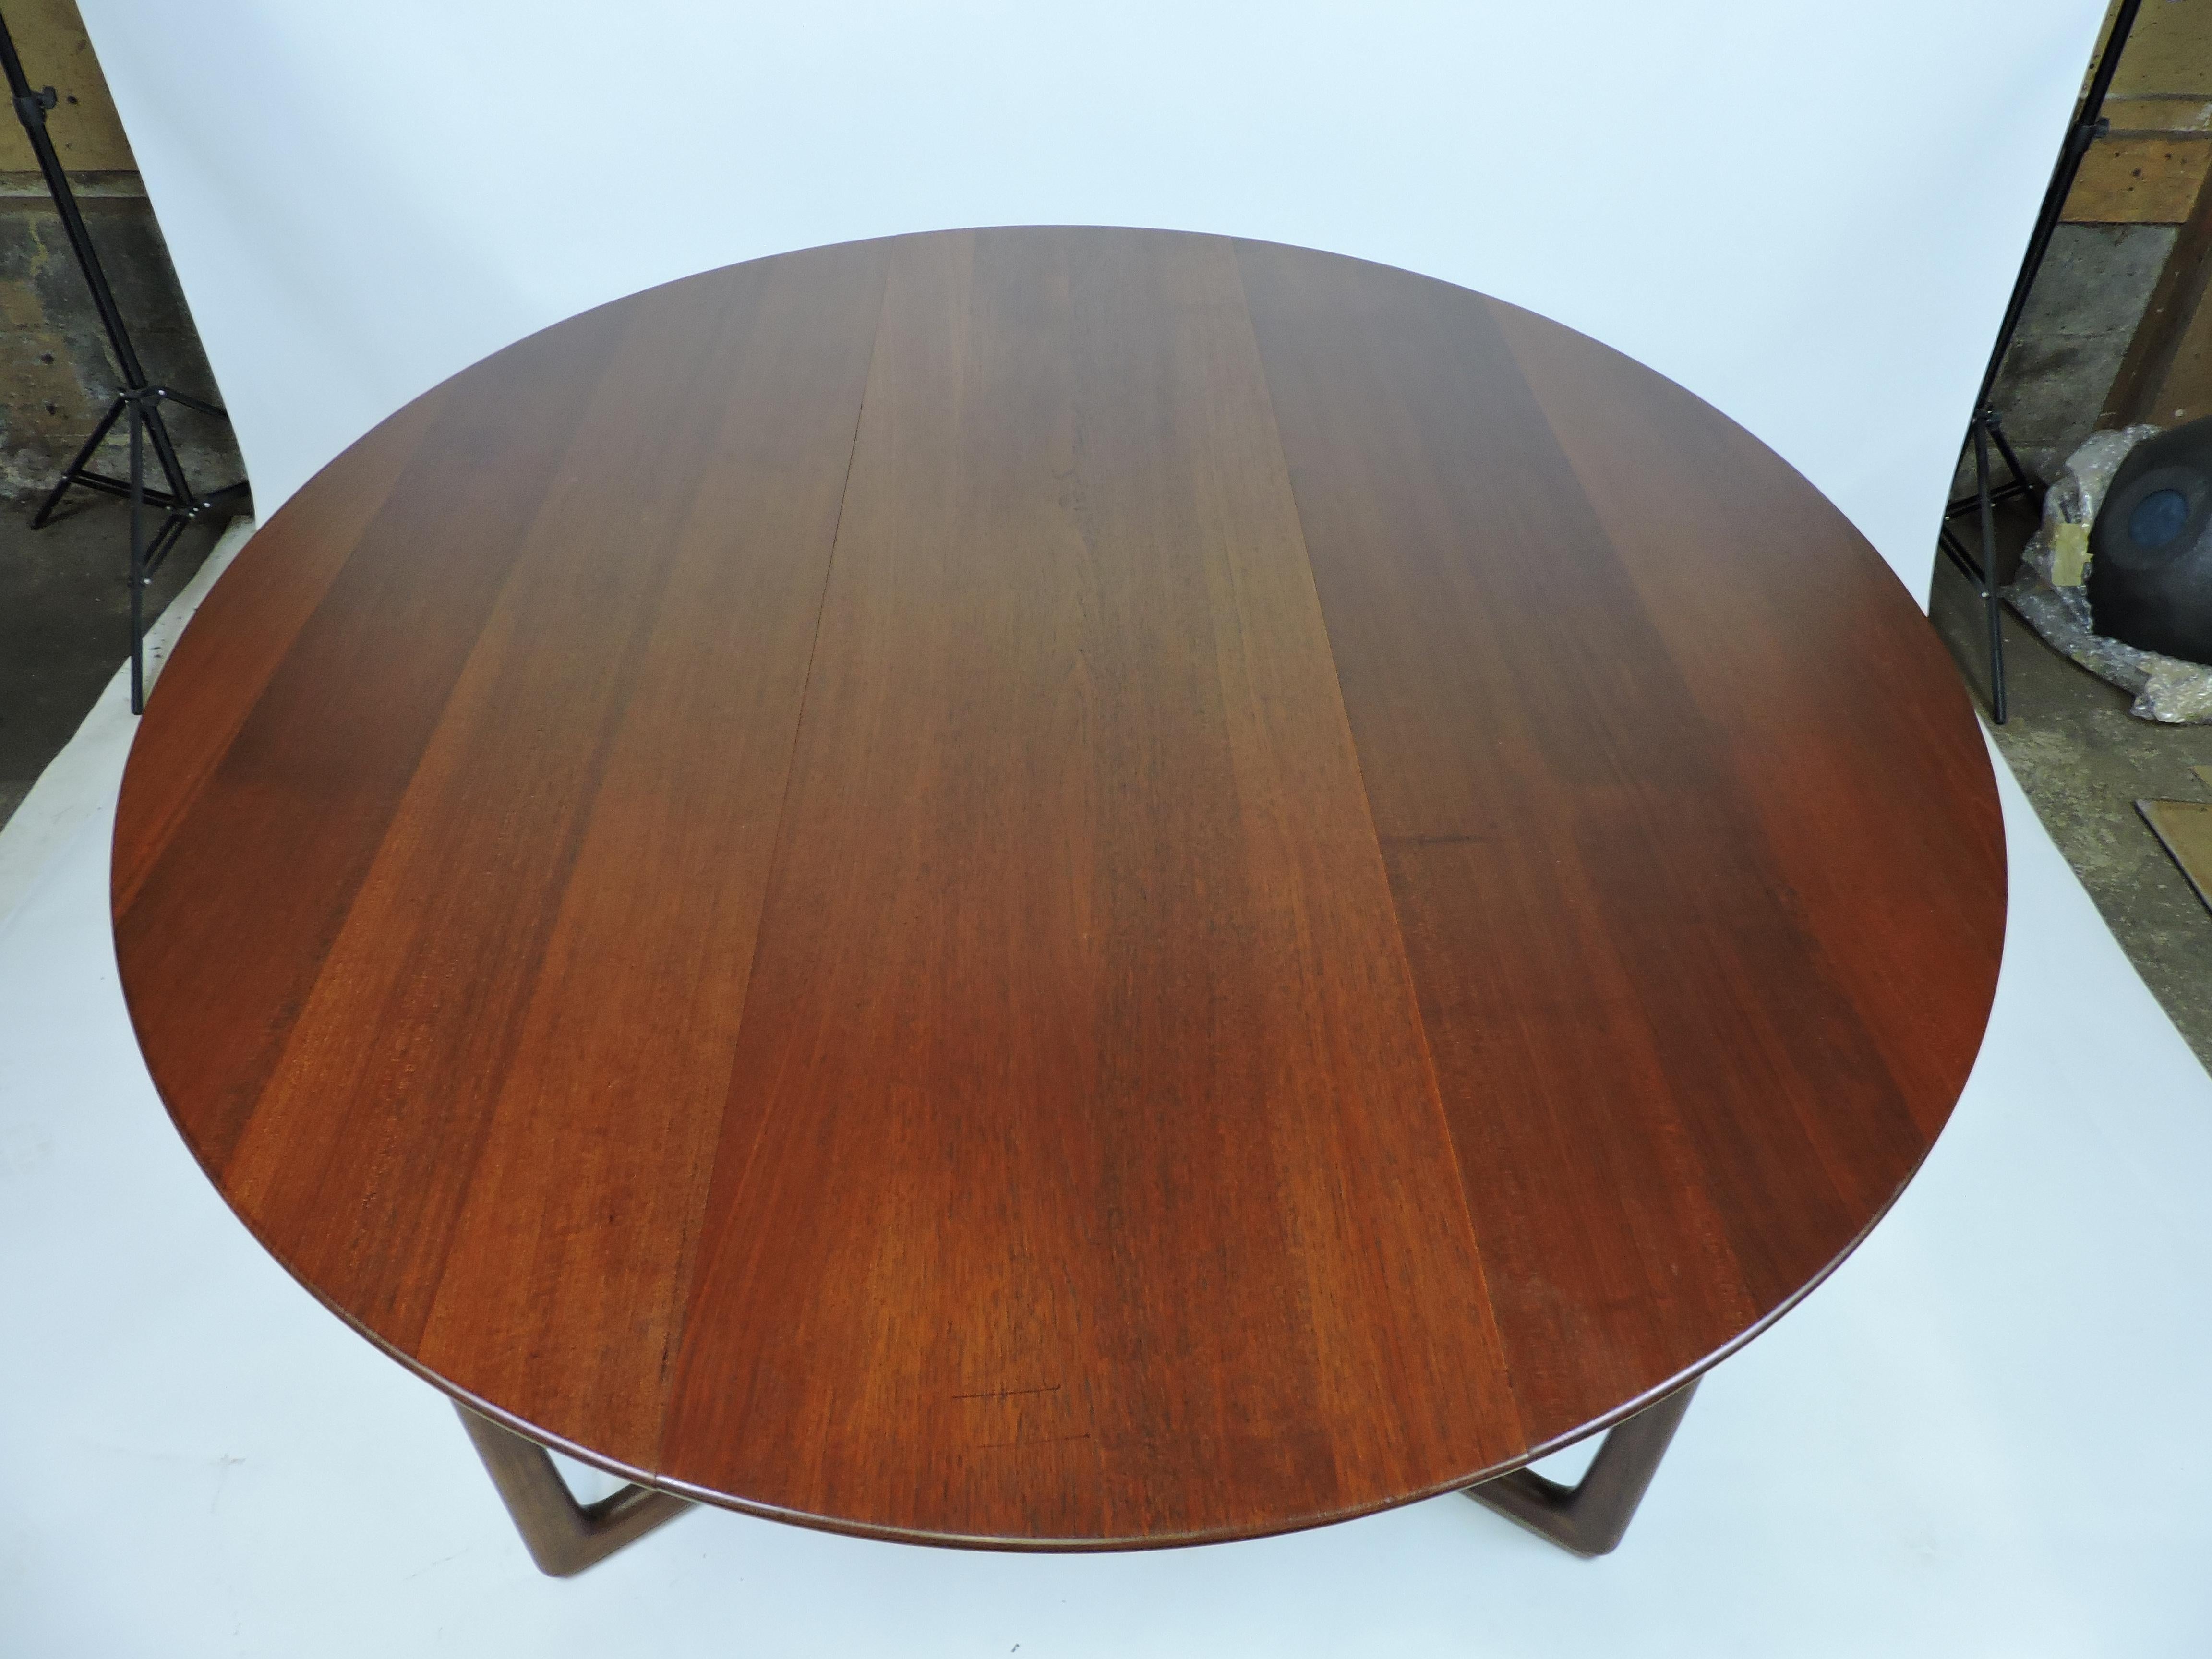 Hvidt Nielsen Danish Modern Solid Teak Drop-Leaf Gateleg Dining Table #20/59 3